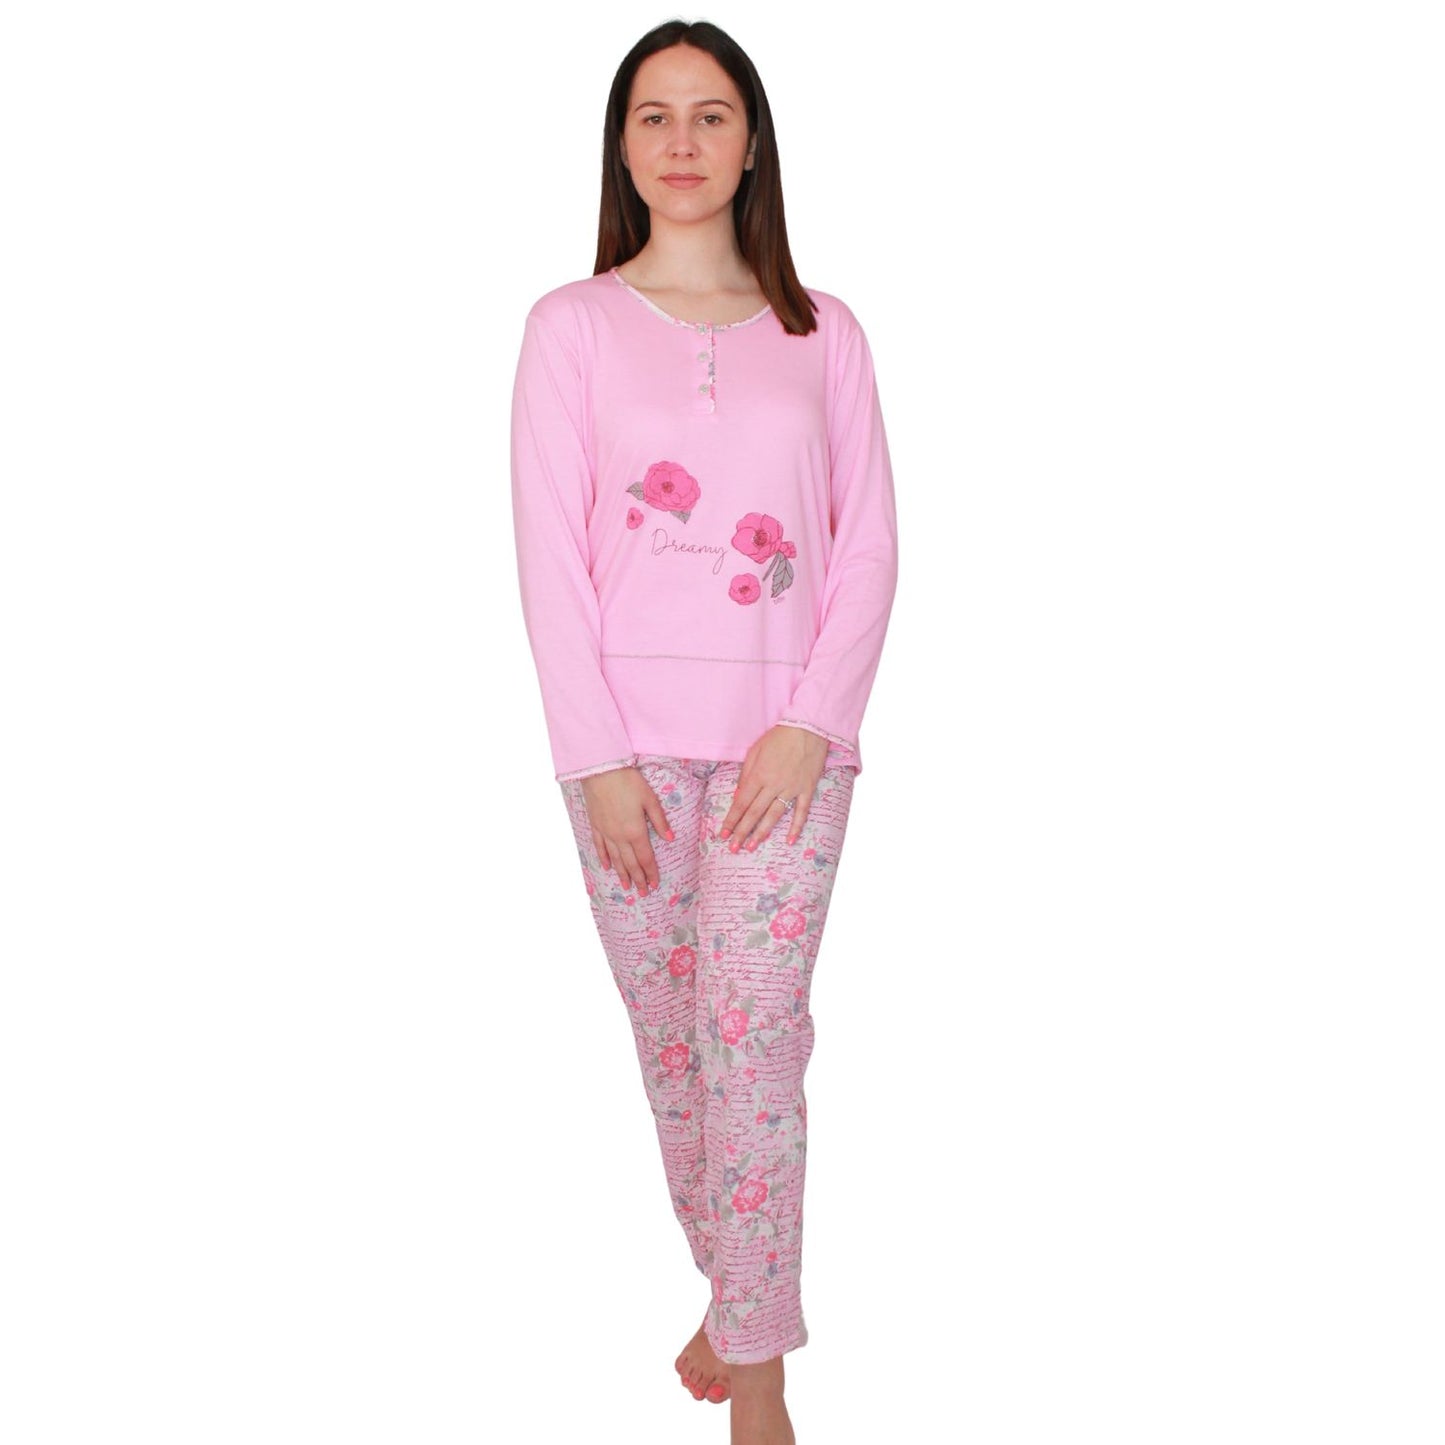 Desana Pijama Mulher Manga Comprida Com Flores Rosa